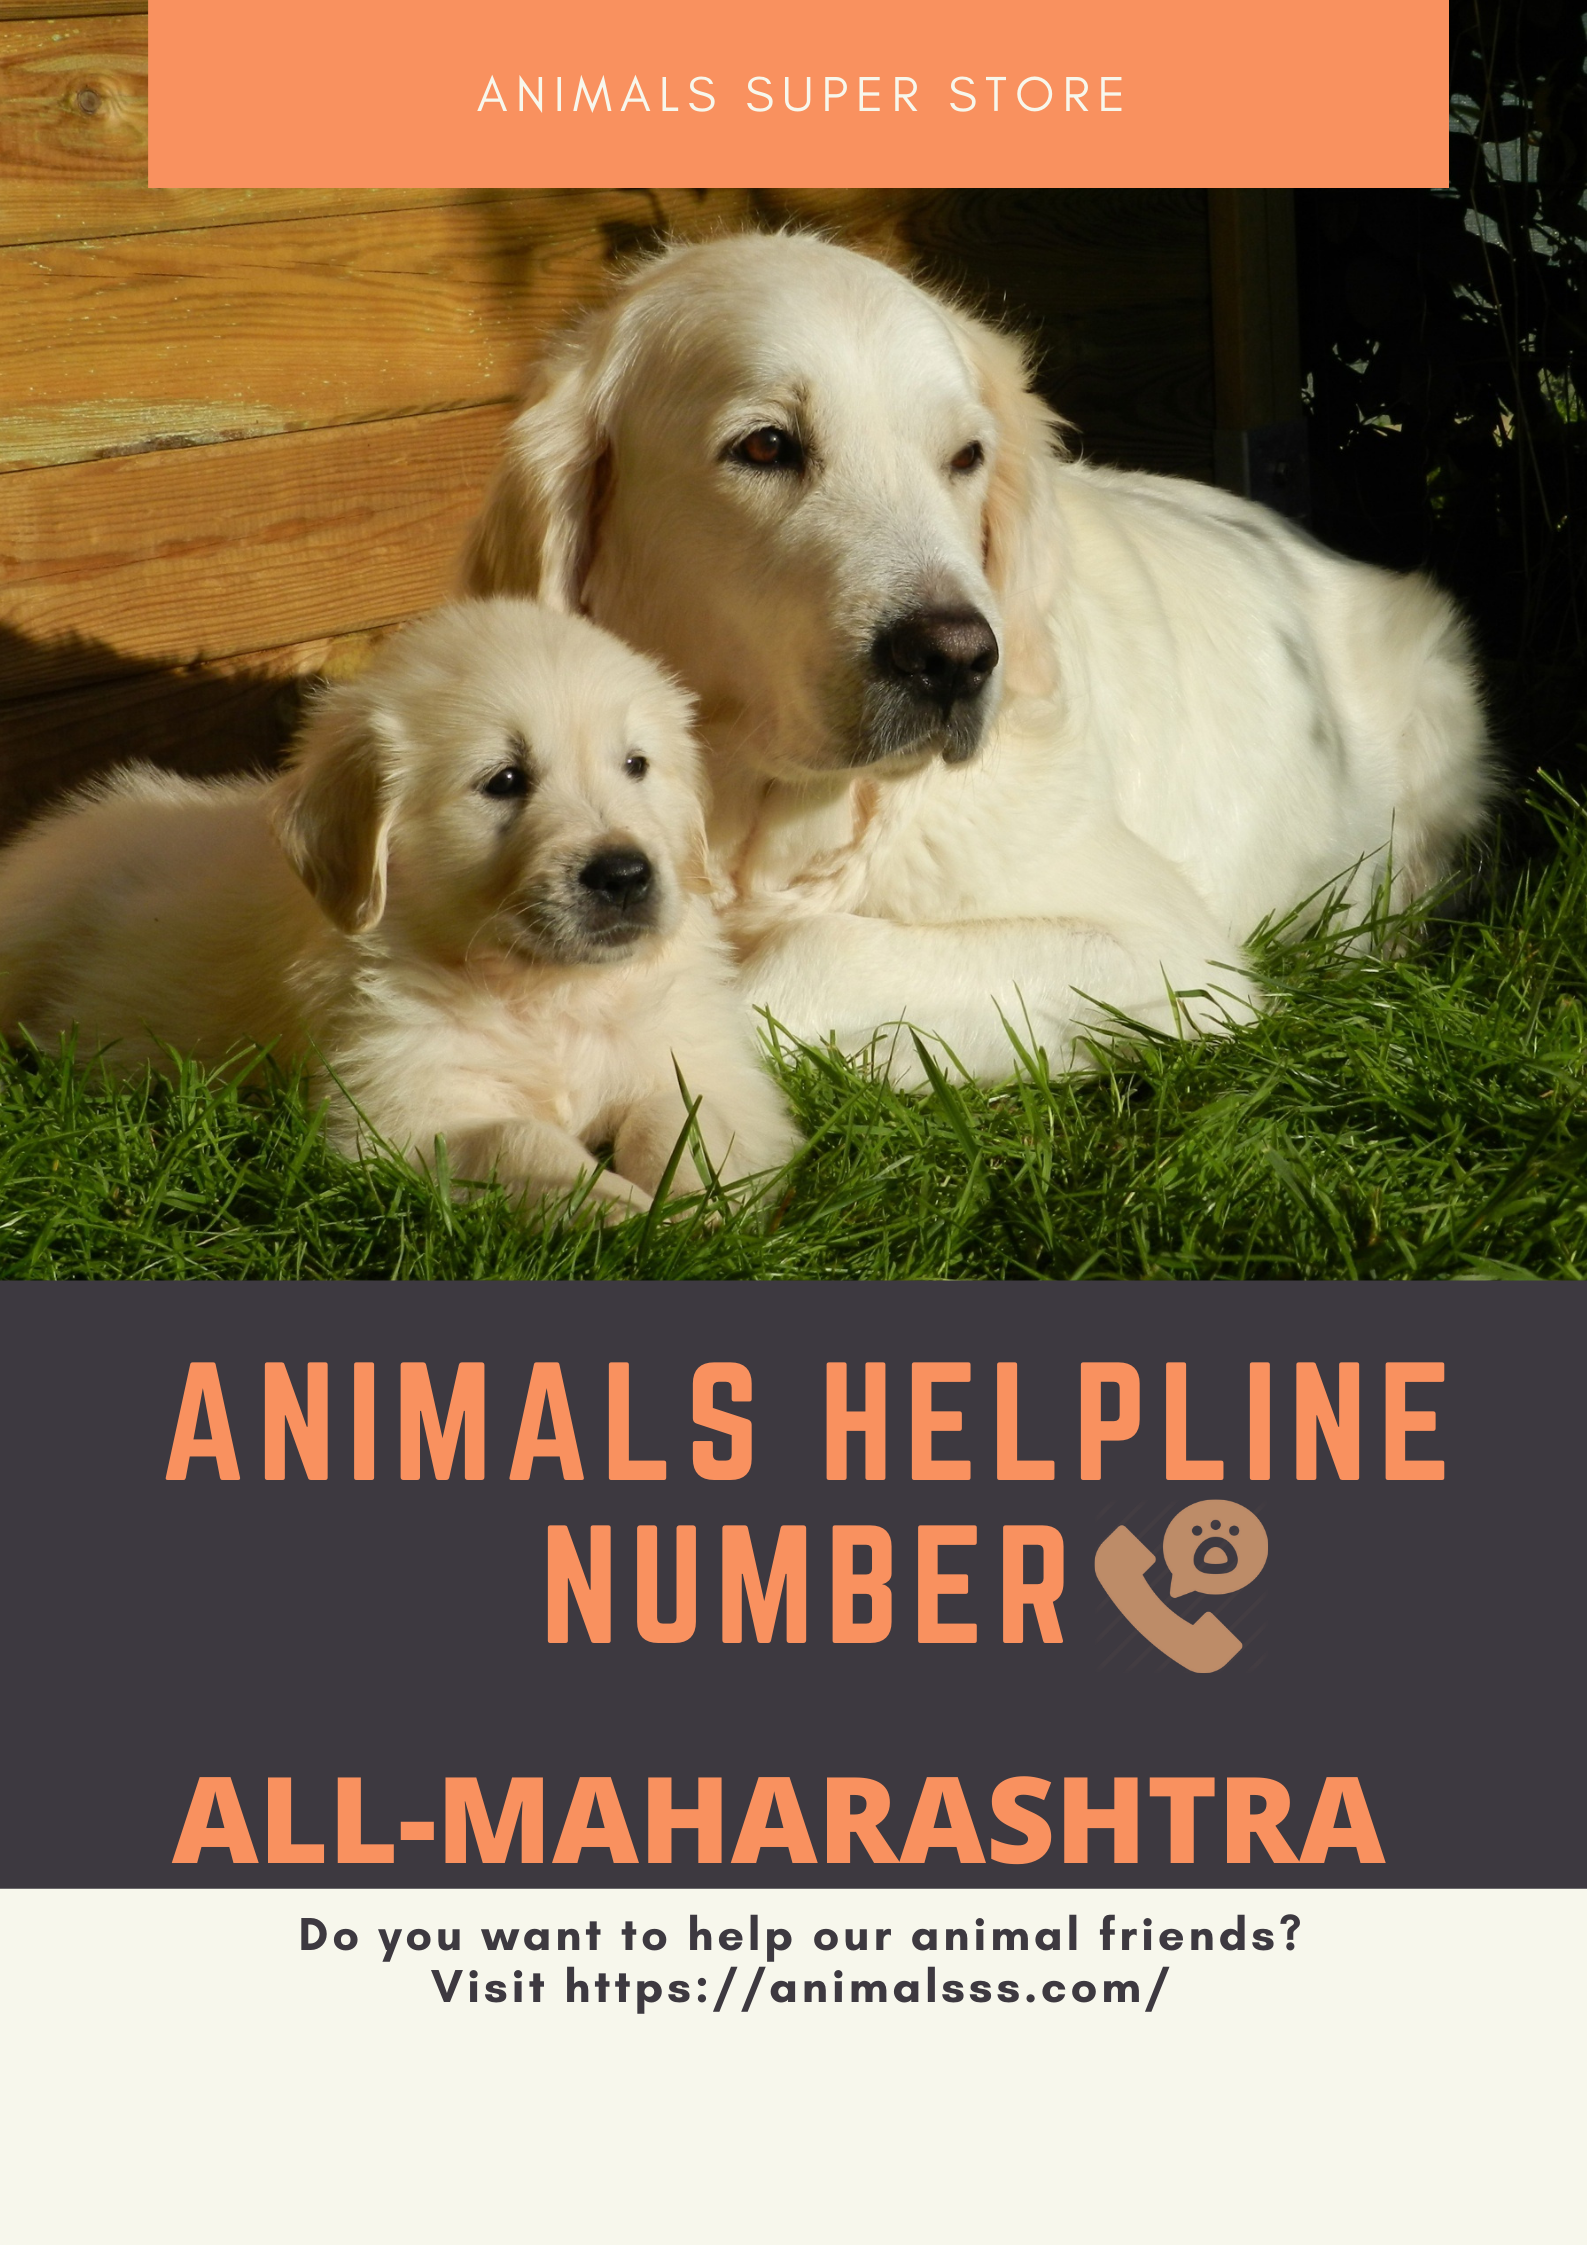 Animals helpline In Punjab | Animals Super Store